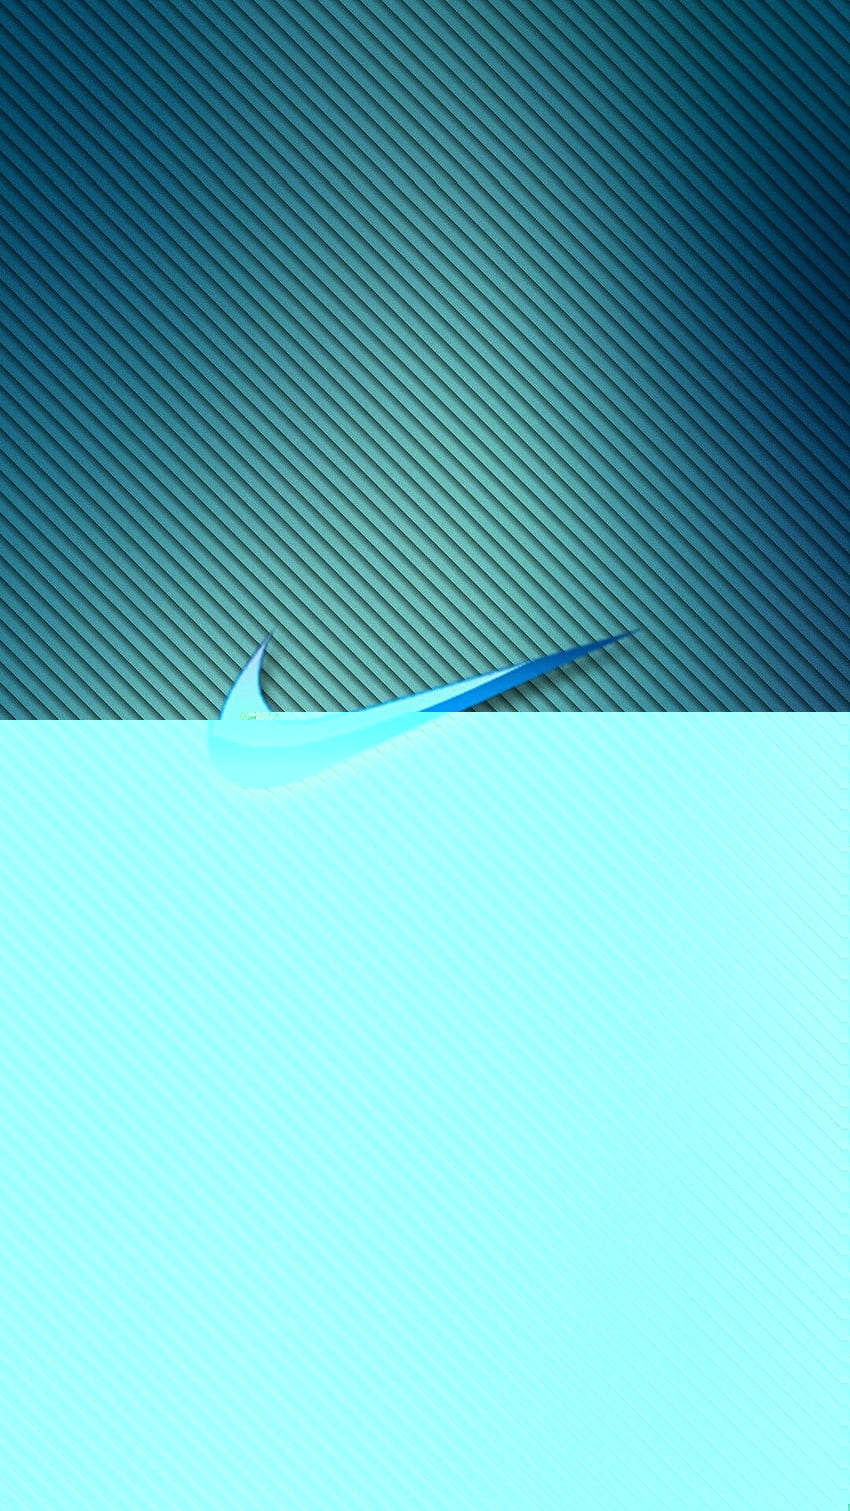 ĳ, blaue Nike HD-Handy-Hintergrundbild